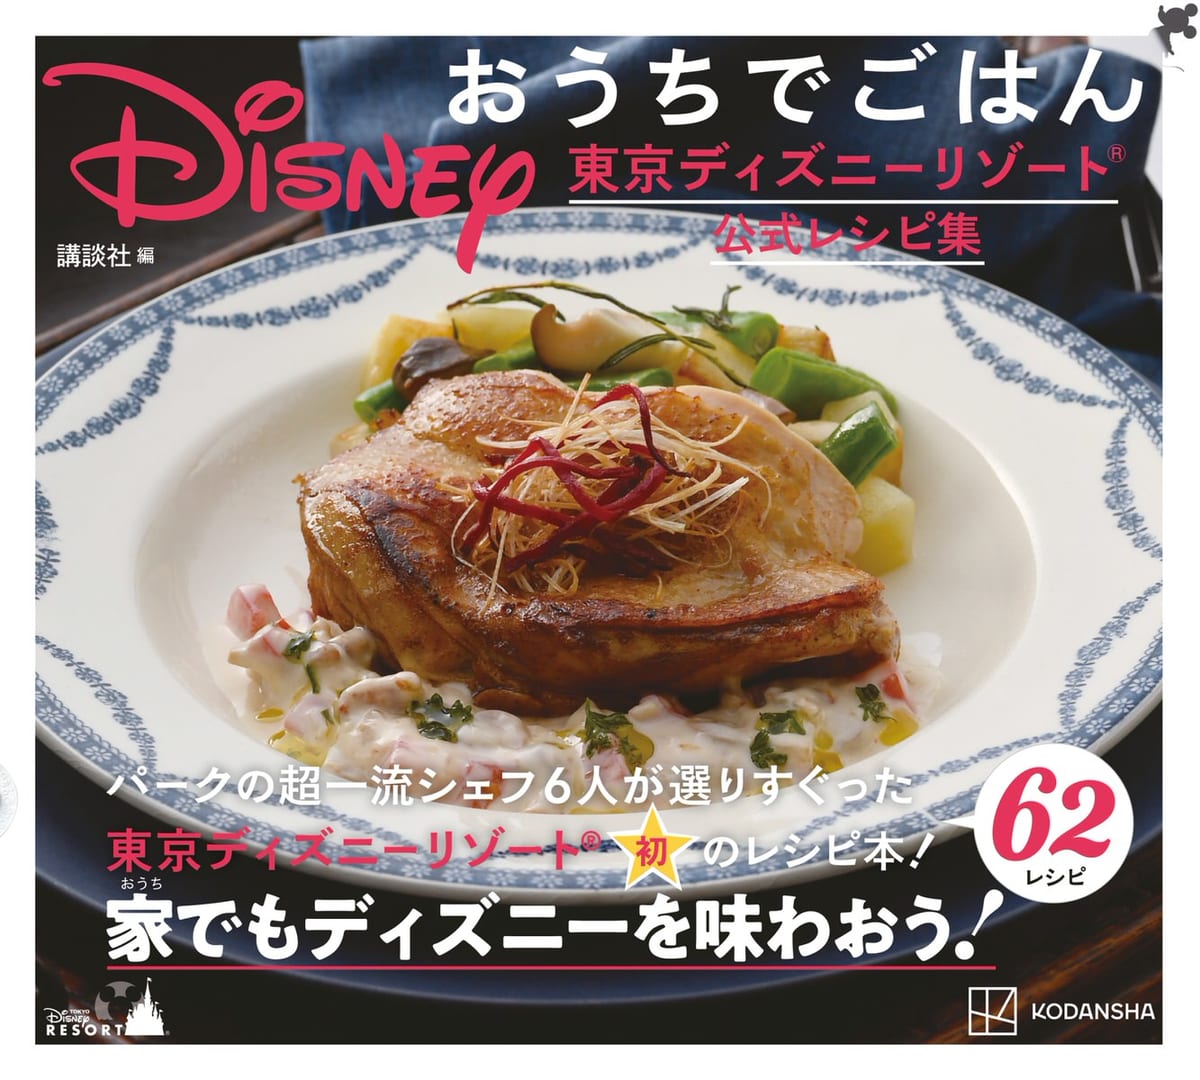 講談社『Disney おうちでごはん 東京ディズニーリゾート公式レシピ集』